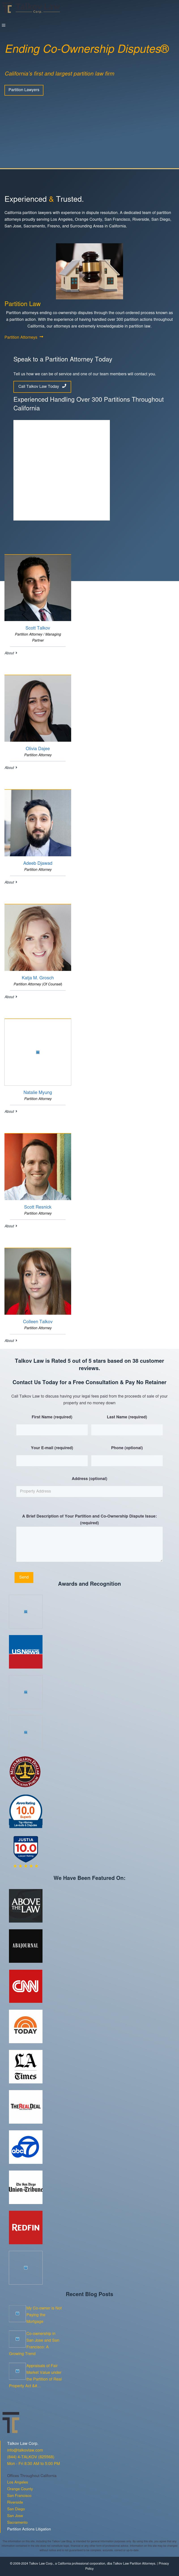 Talkov Law - Newport Beach CA Lawyers